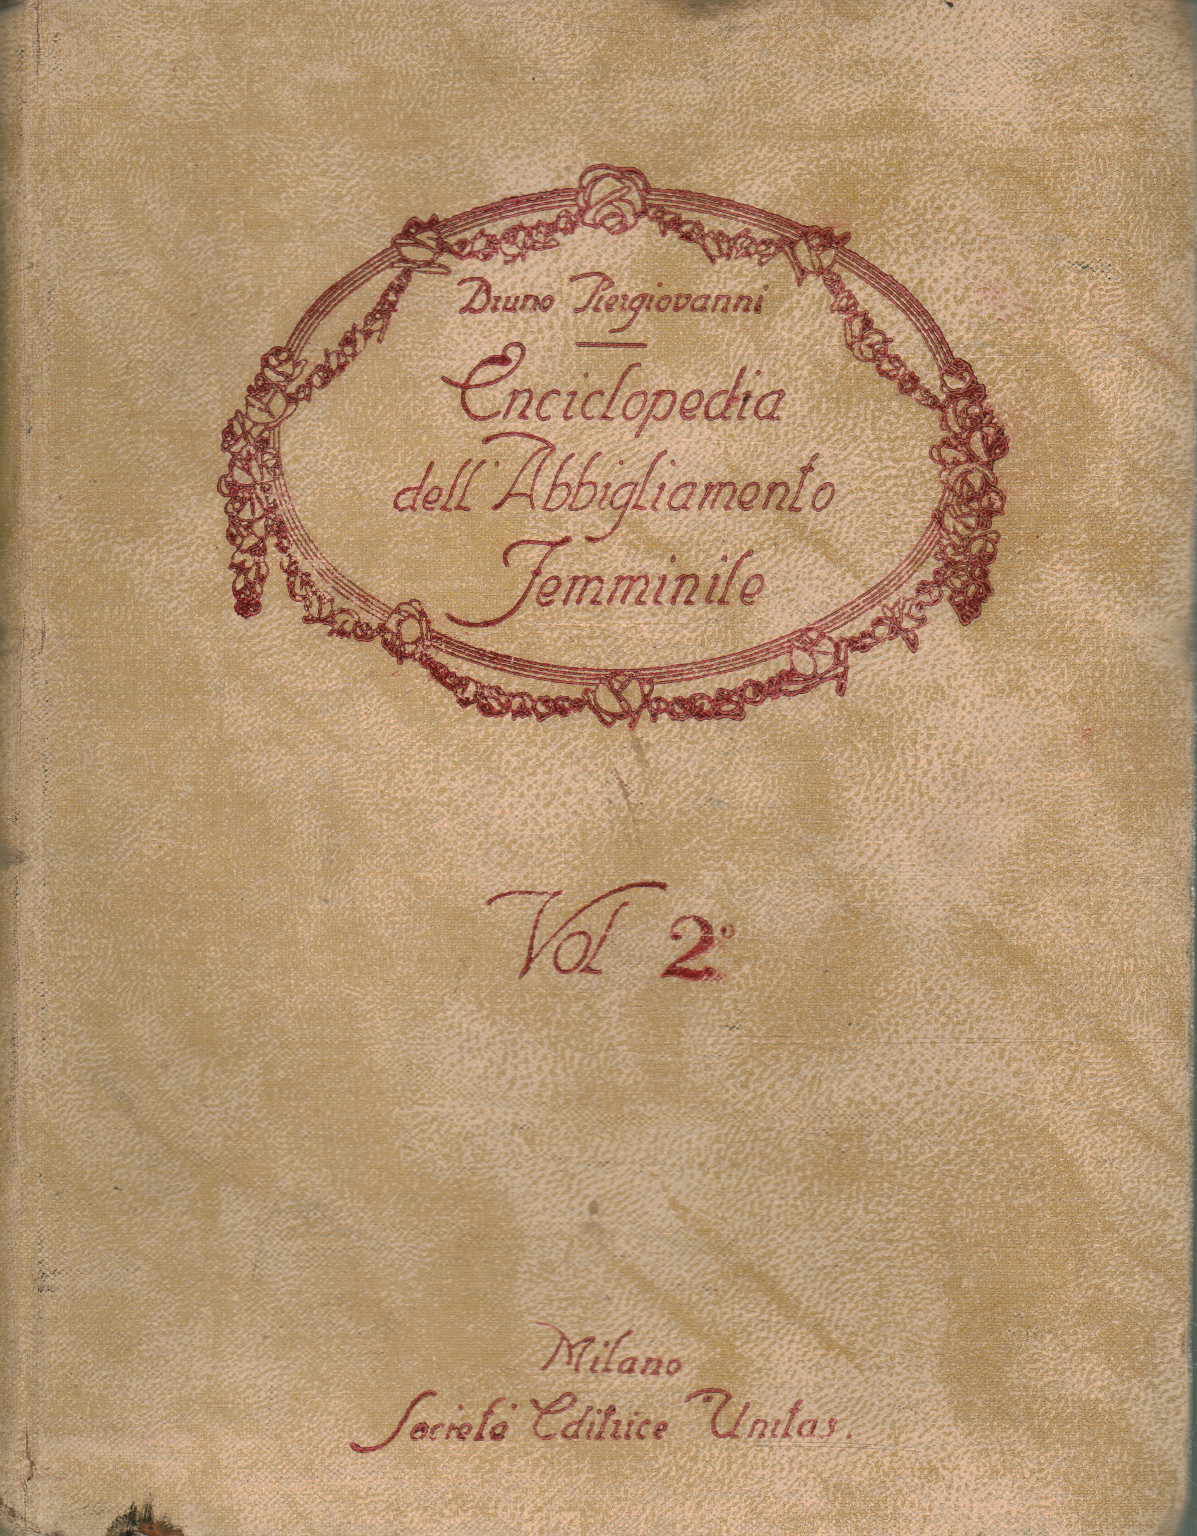 Enciclopedia dell'Abbigliamento femminile (Volume, Bruno Piergiovanni